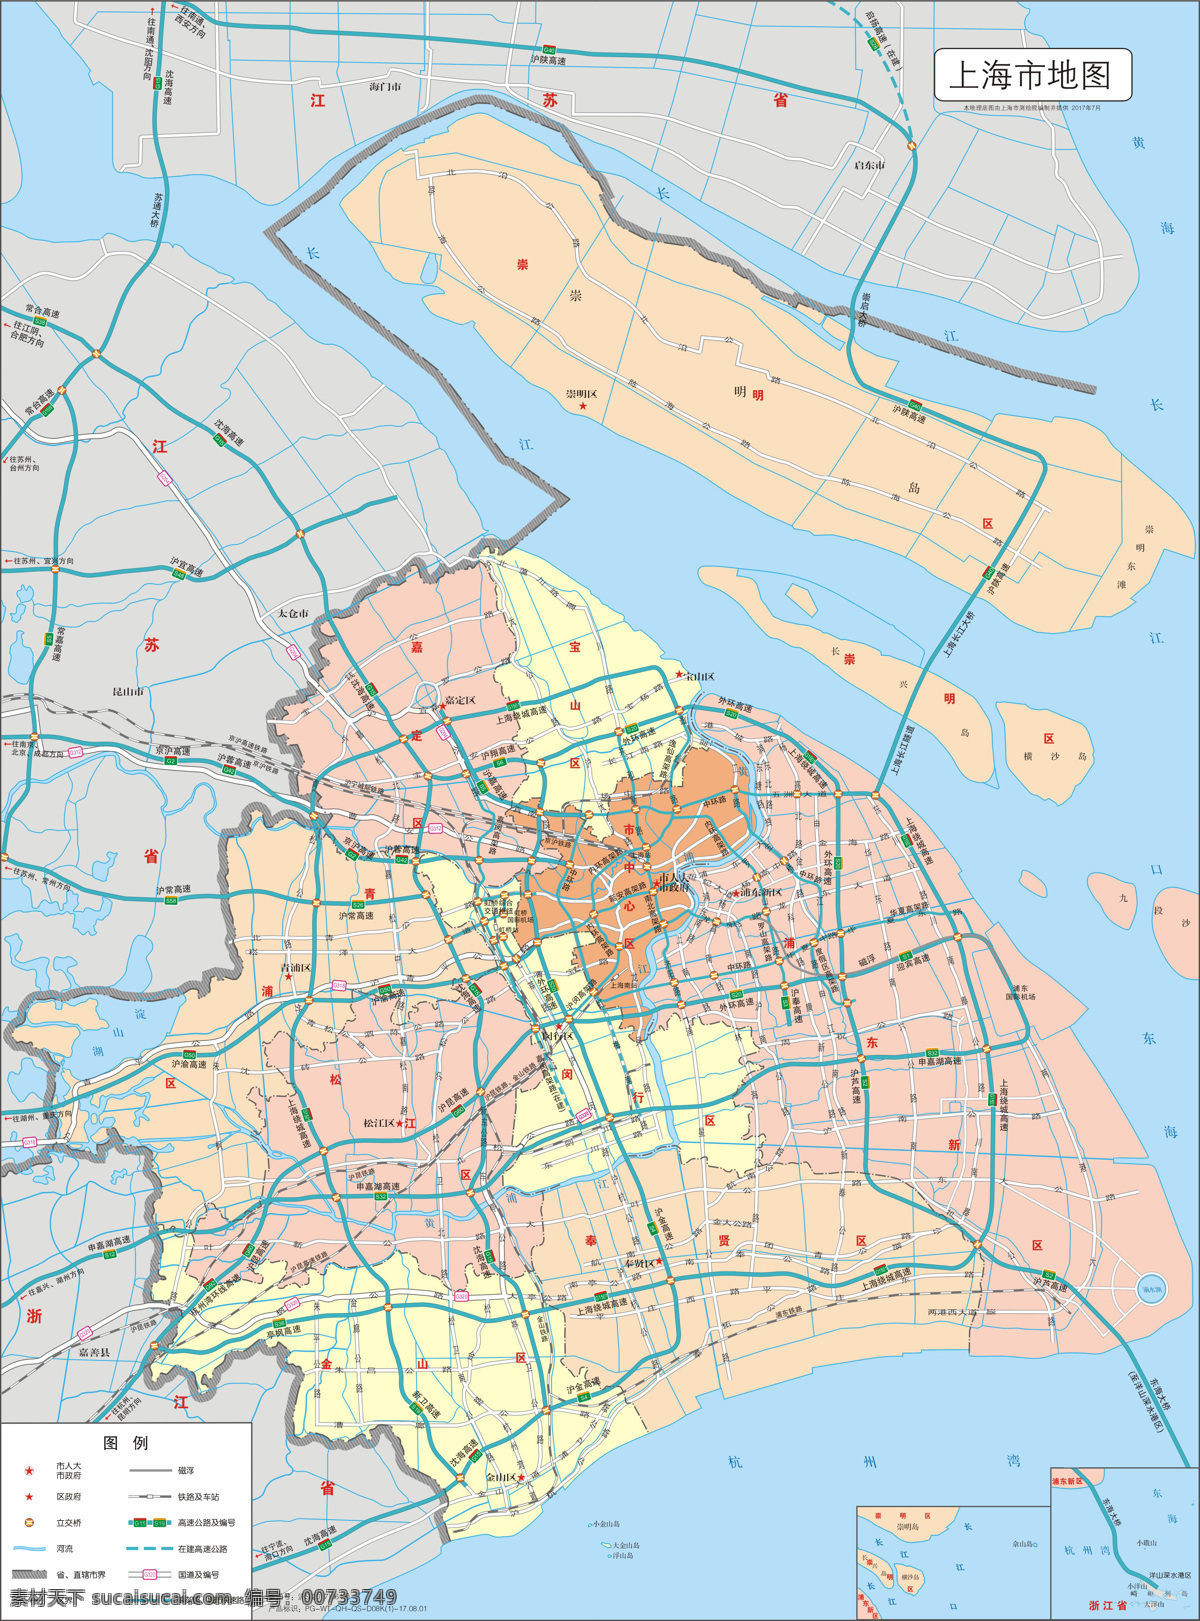 上海市 标准 地图 标准地图 上海市地图 地图模板 上海地图 直辖市地图